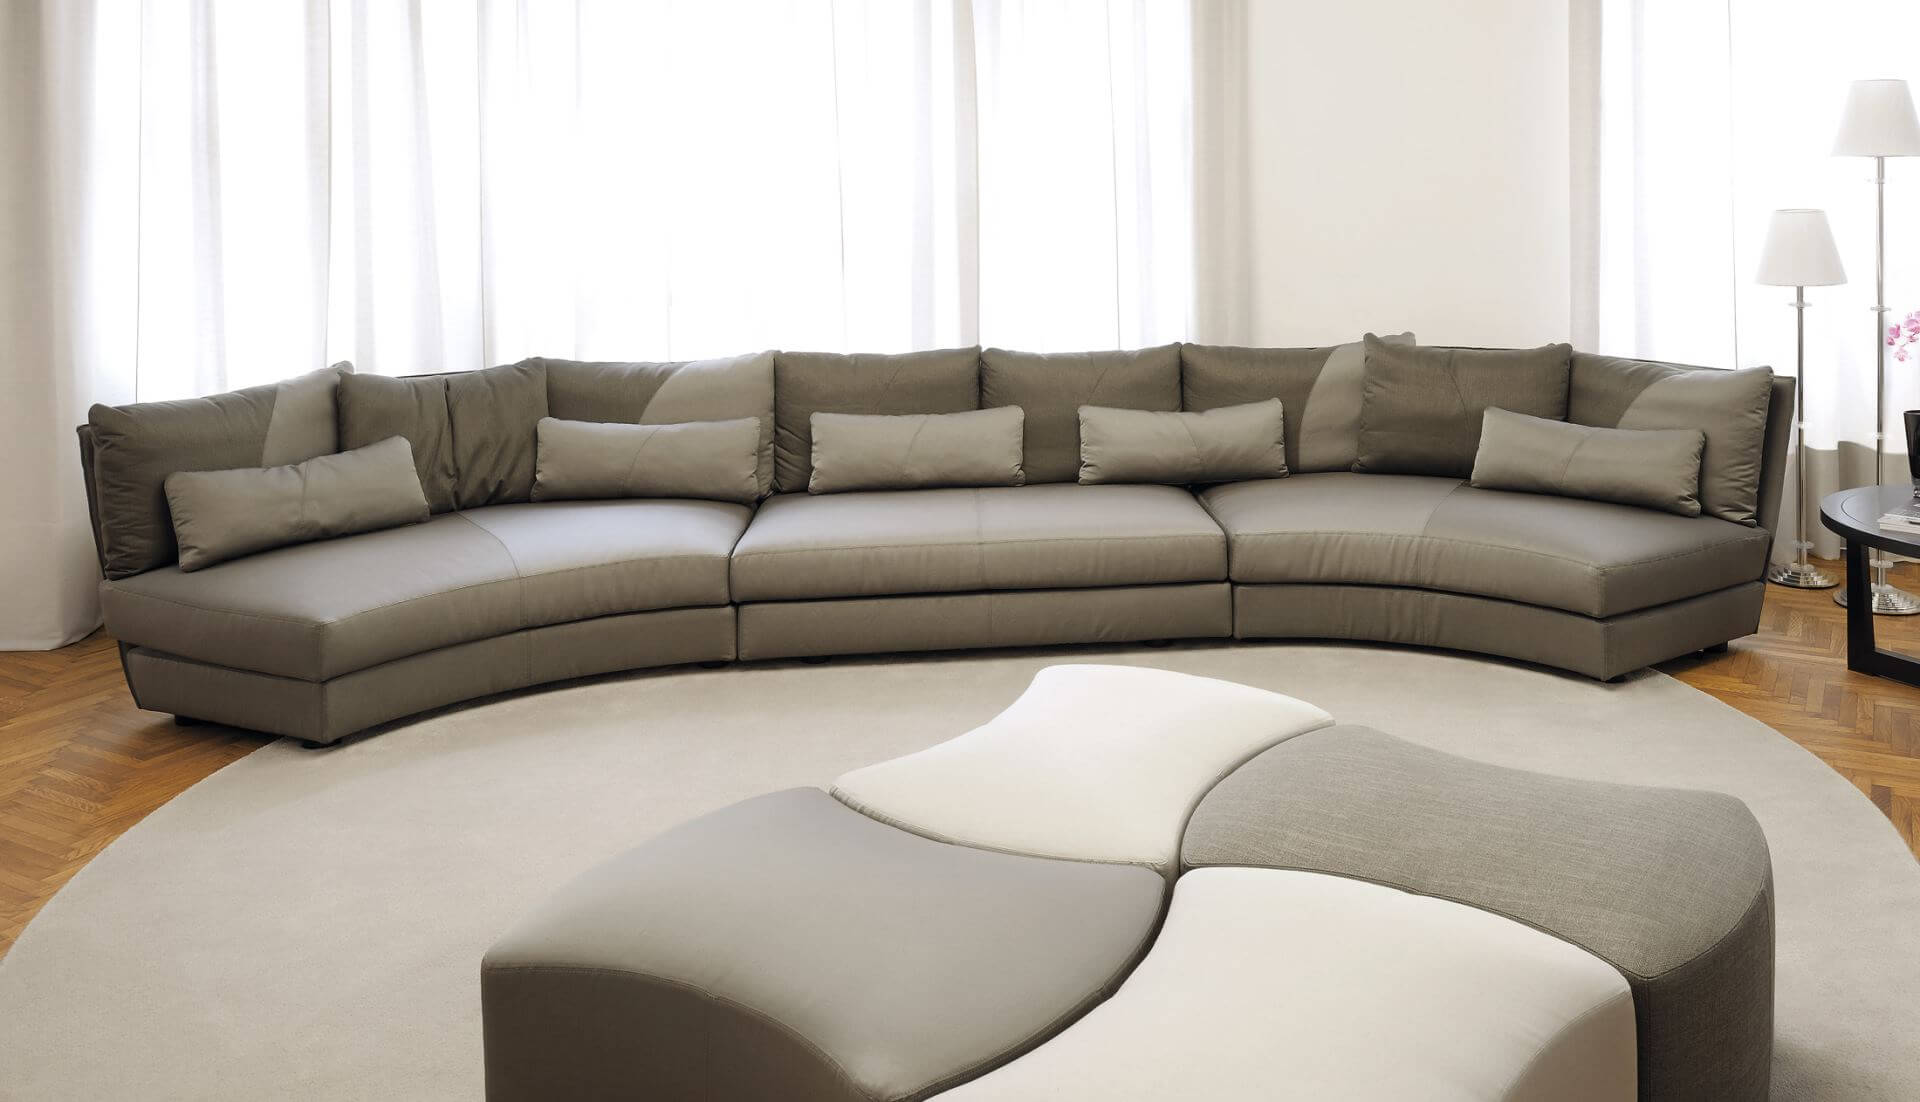 Dhow Curved Modular Sofa Dream Design